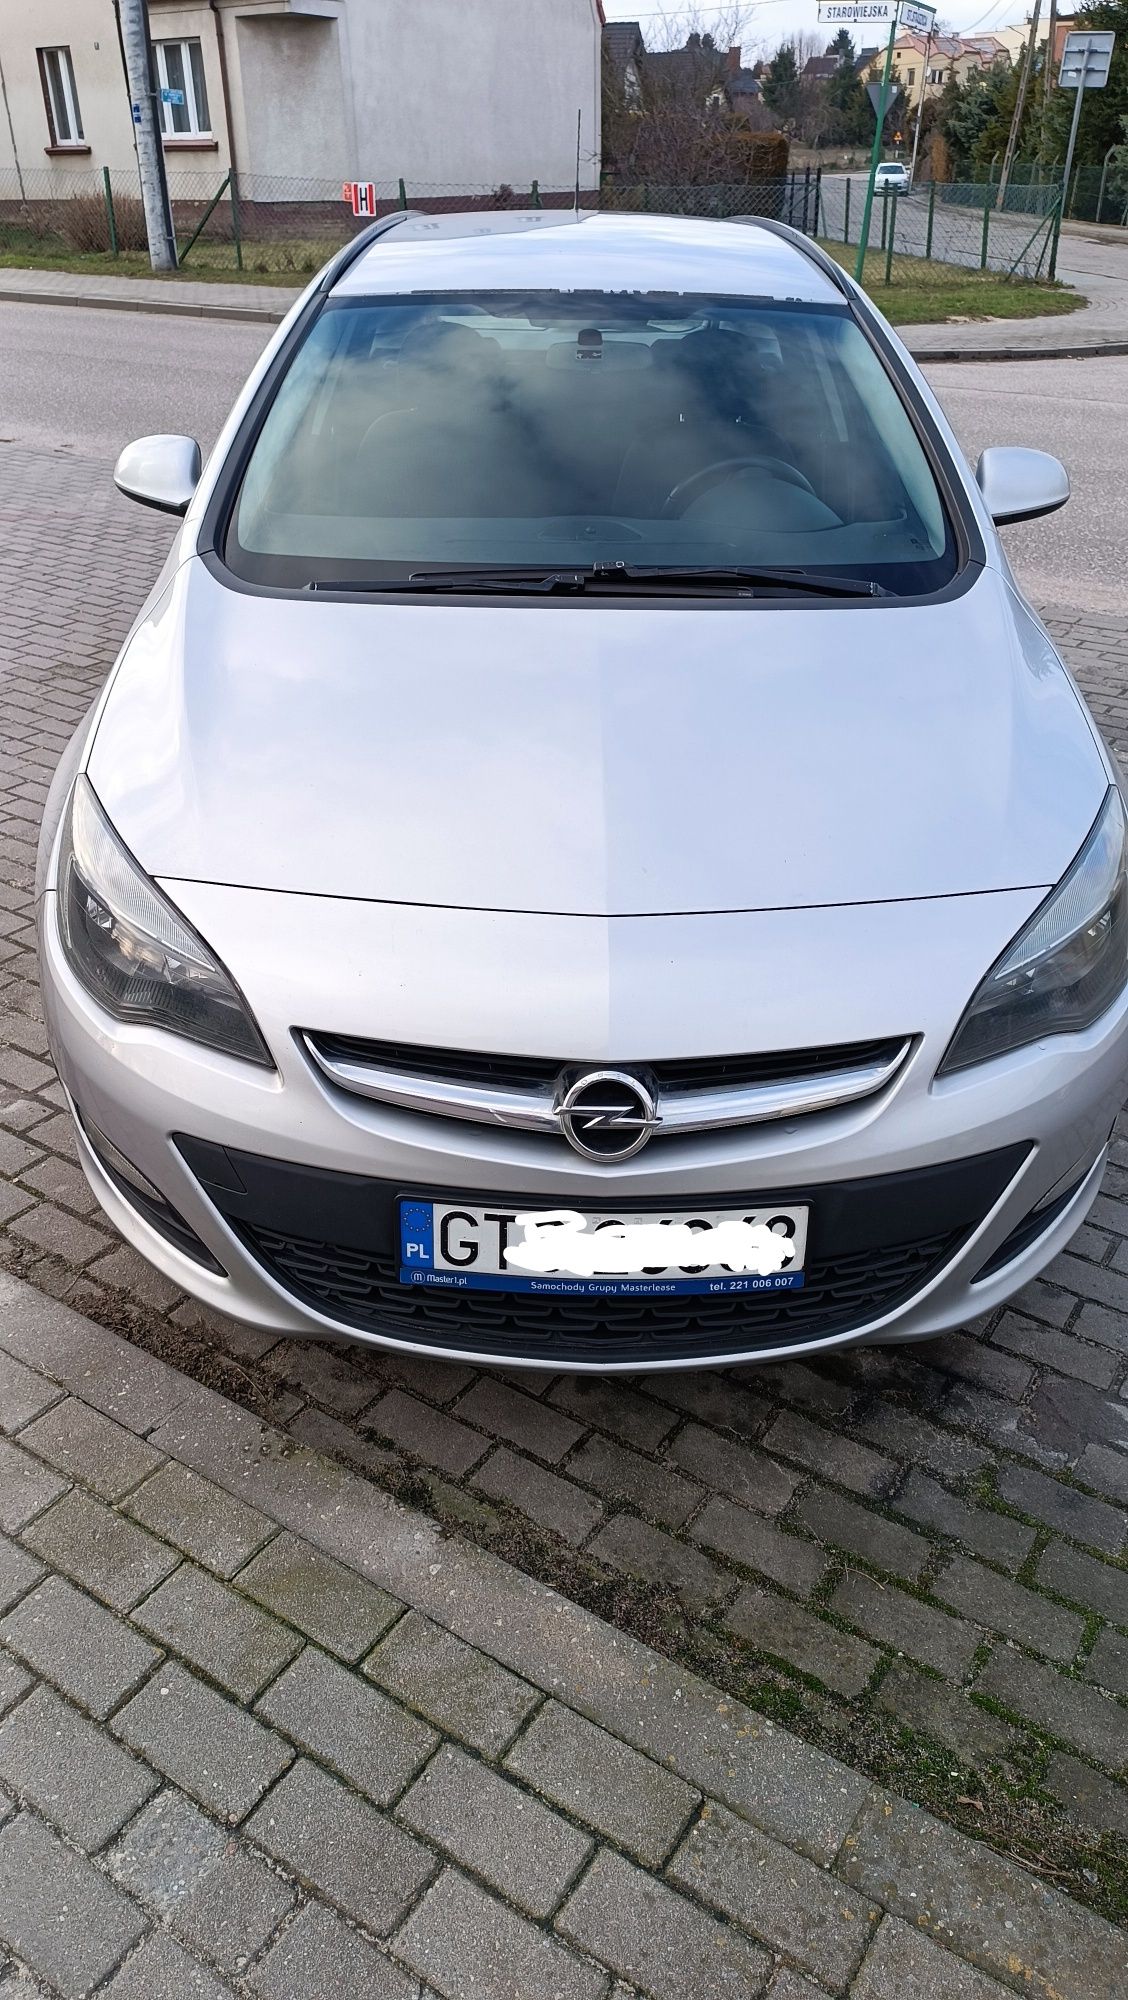 Opel Astra J 1.6 Sport Tourer 2015 uszkodzony silnik